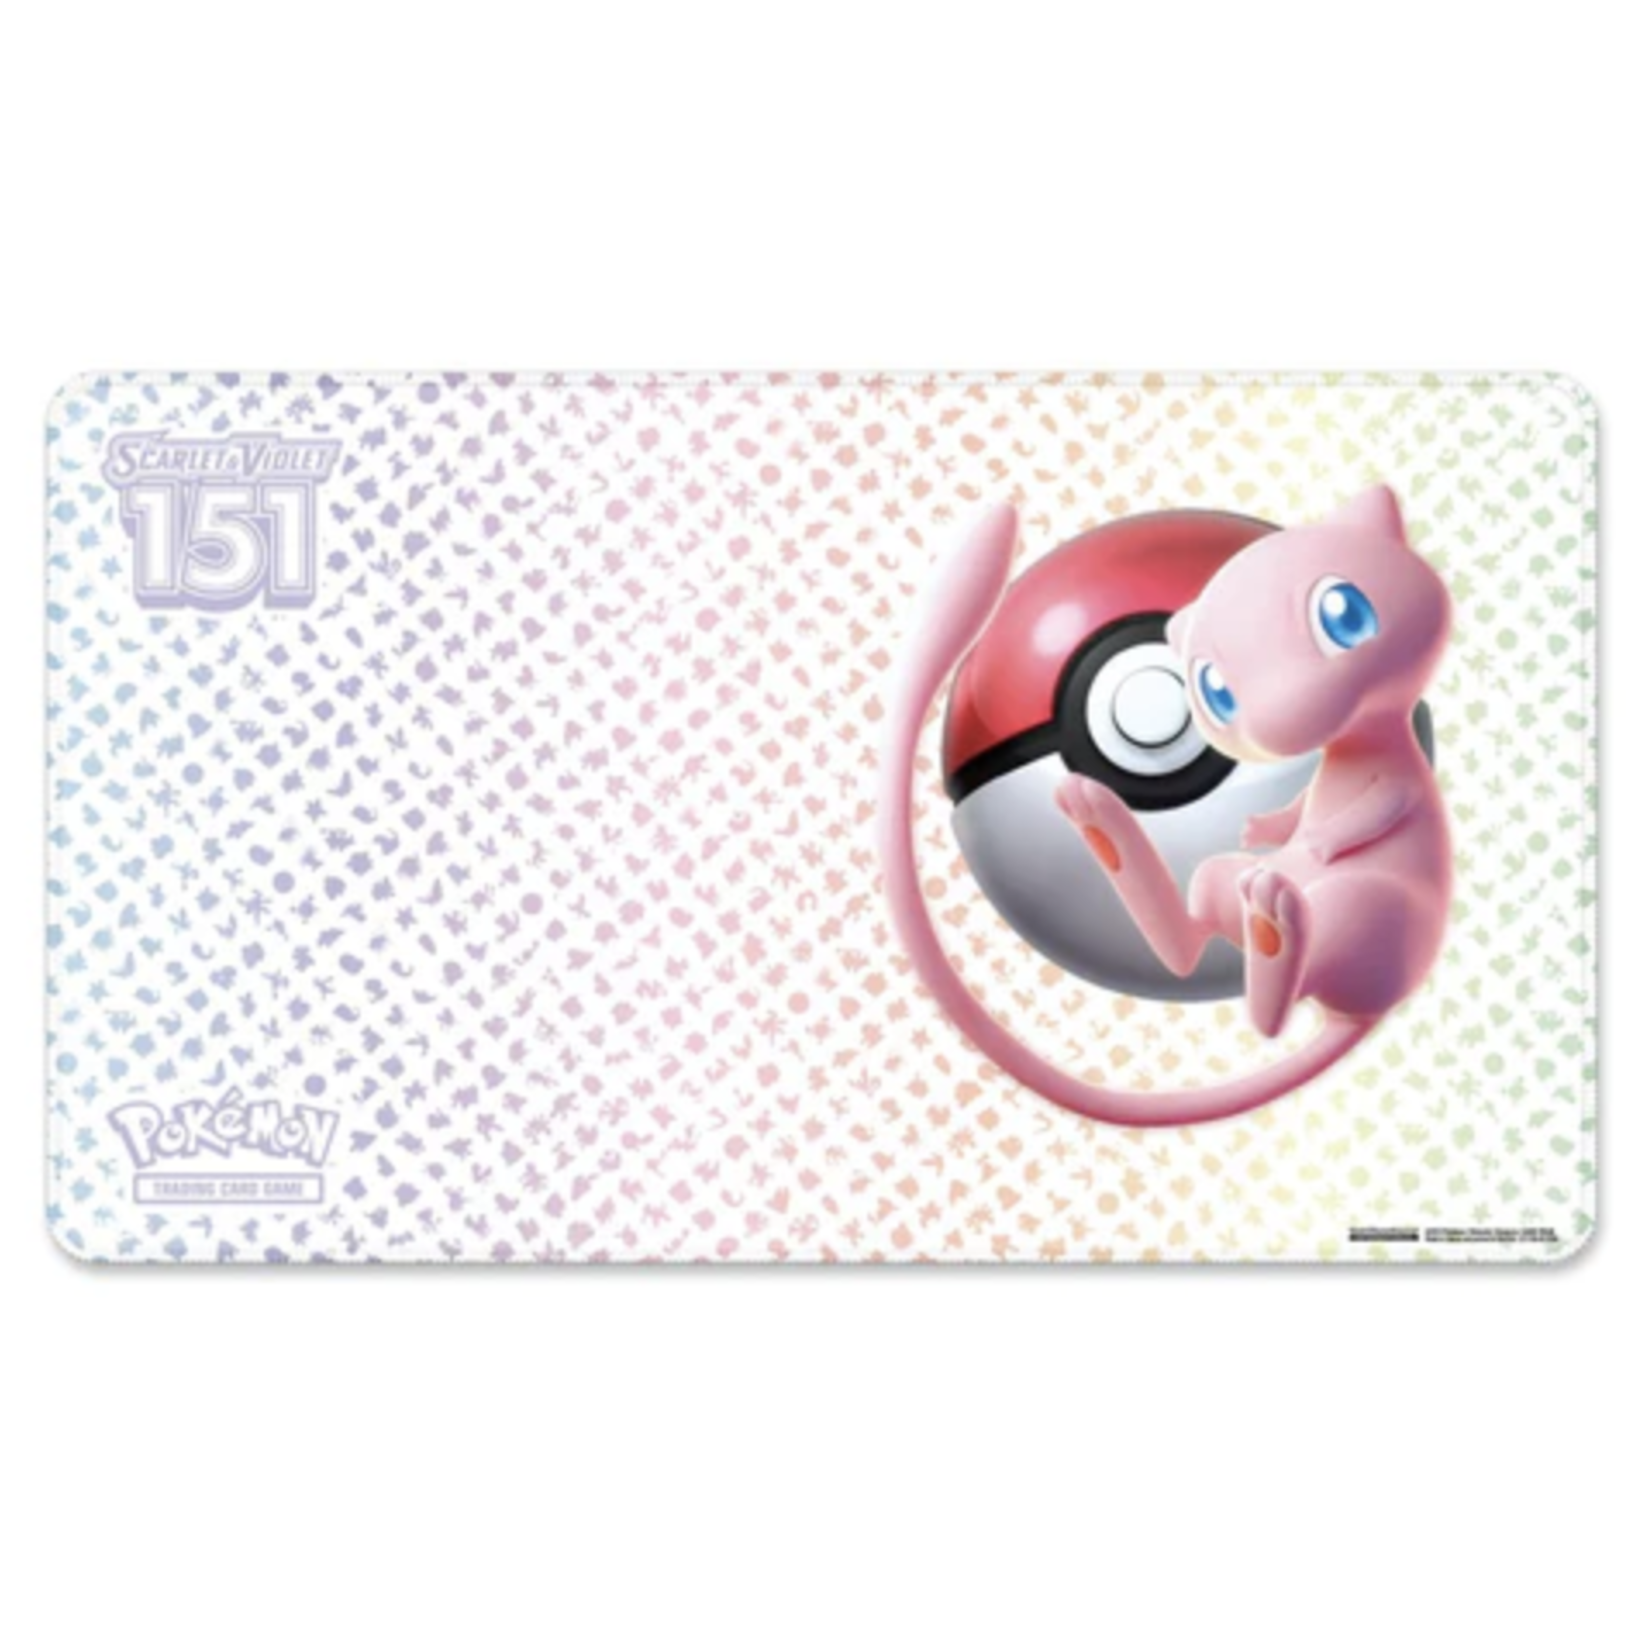 Pokémon Pokémon Scarlet and Violet 151 Mew UPC Playmat